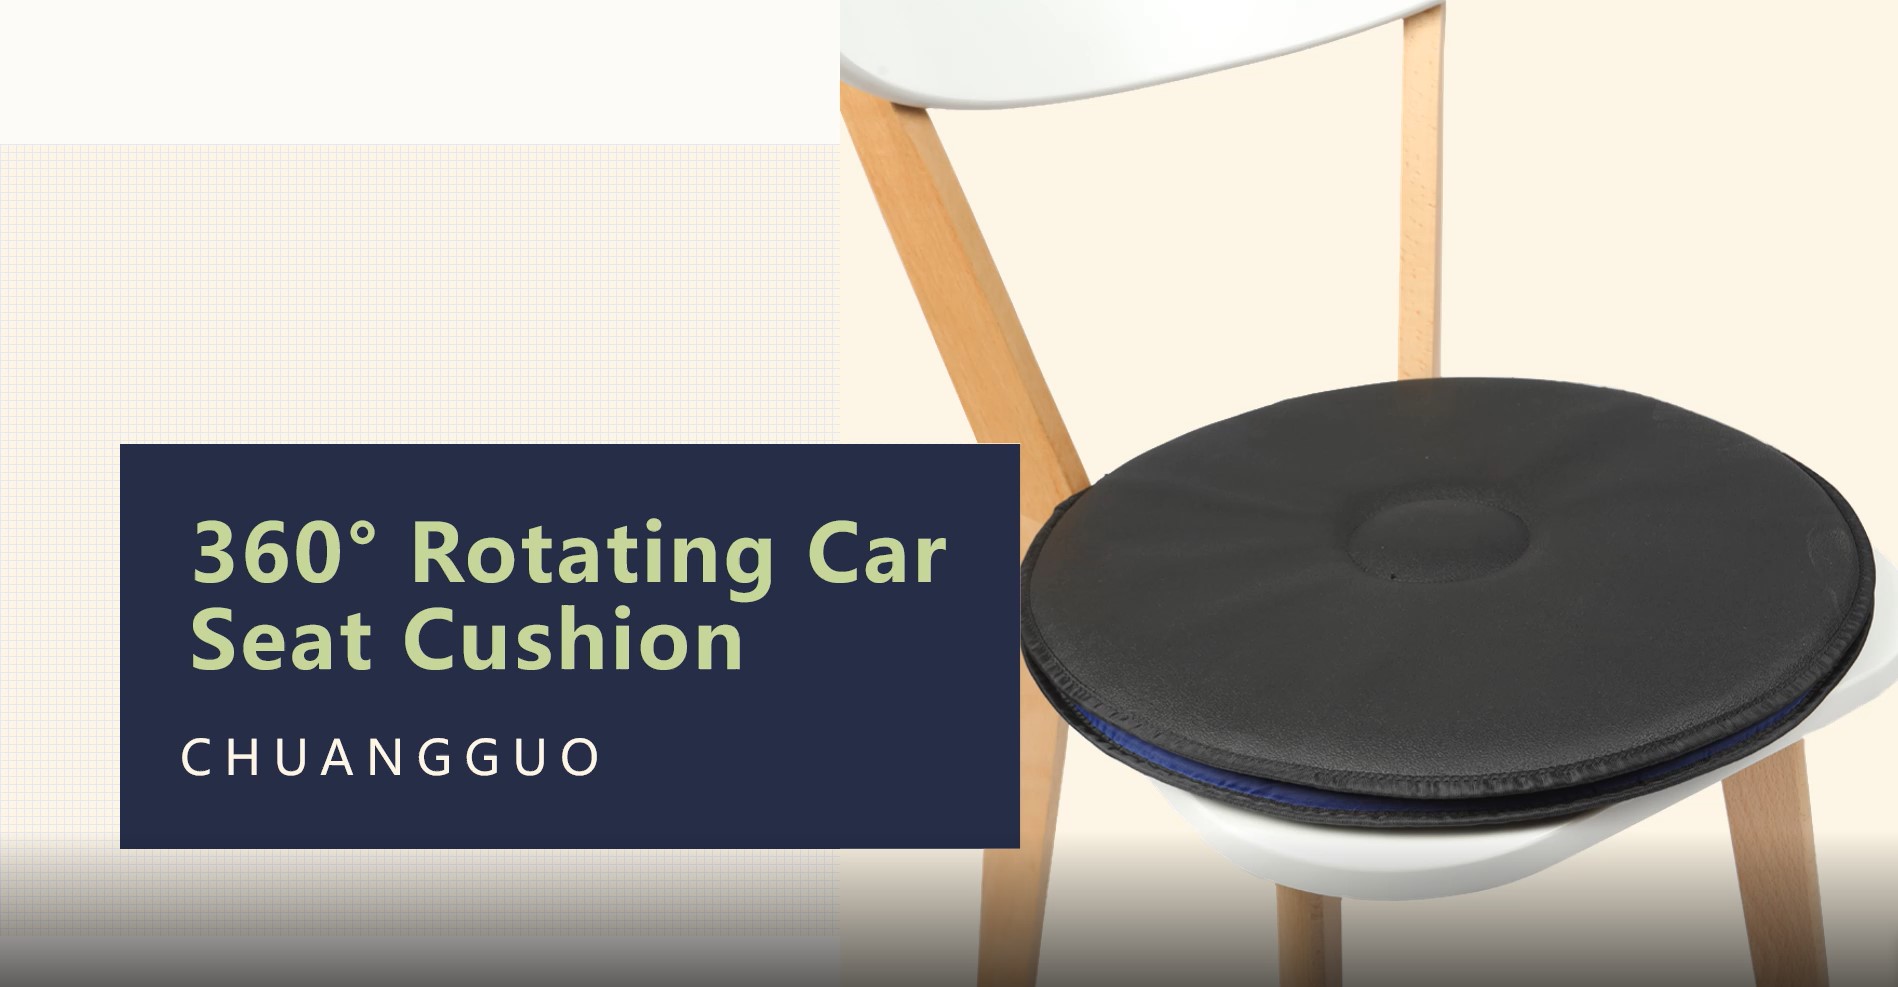 360° Rotating Car Seat Cushion